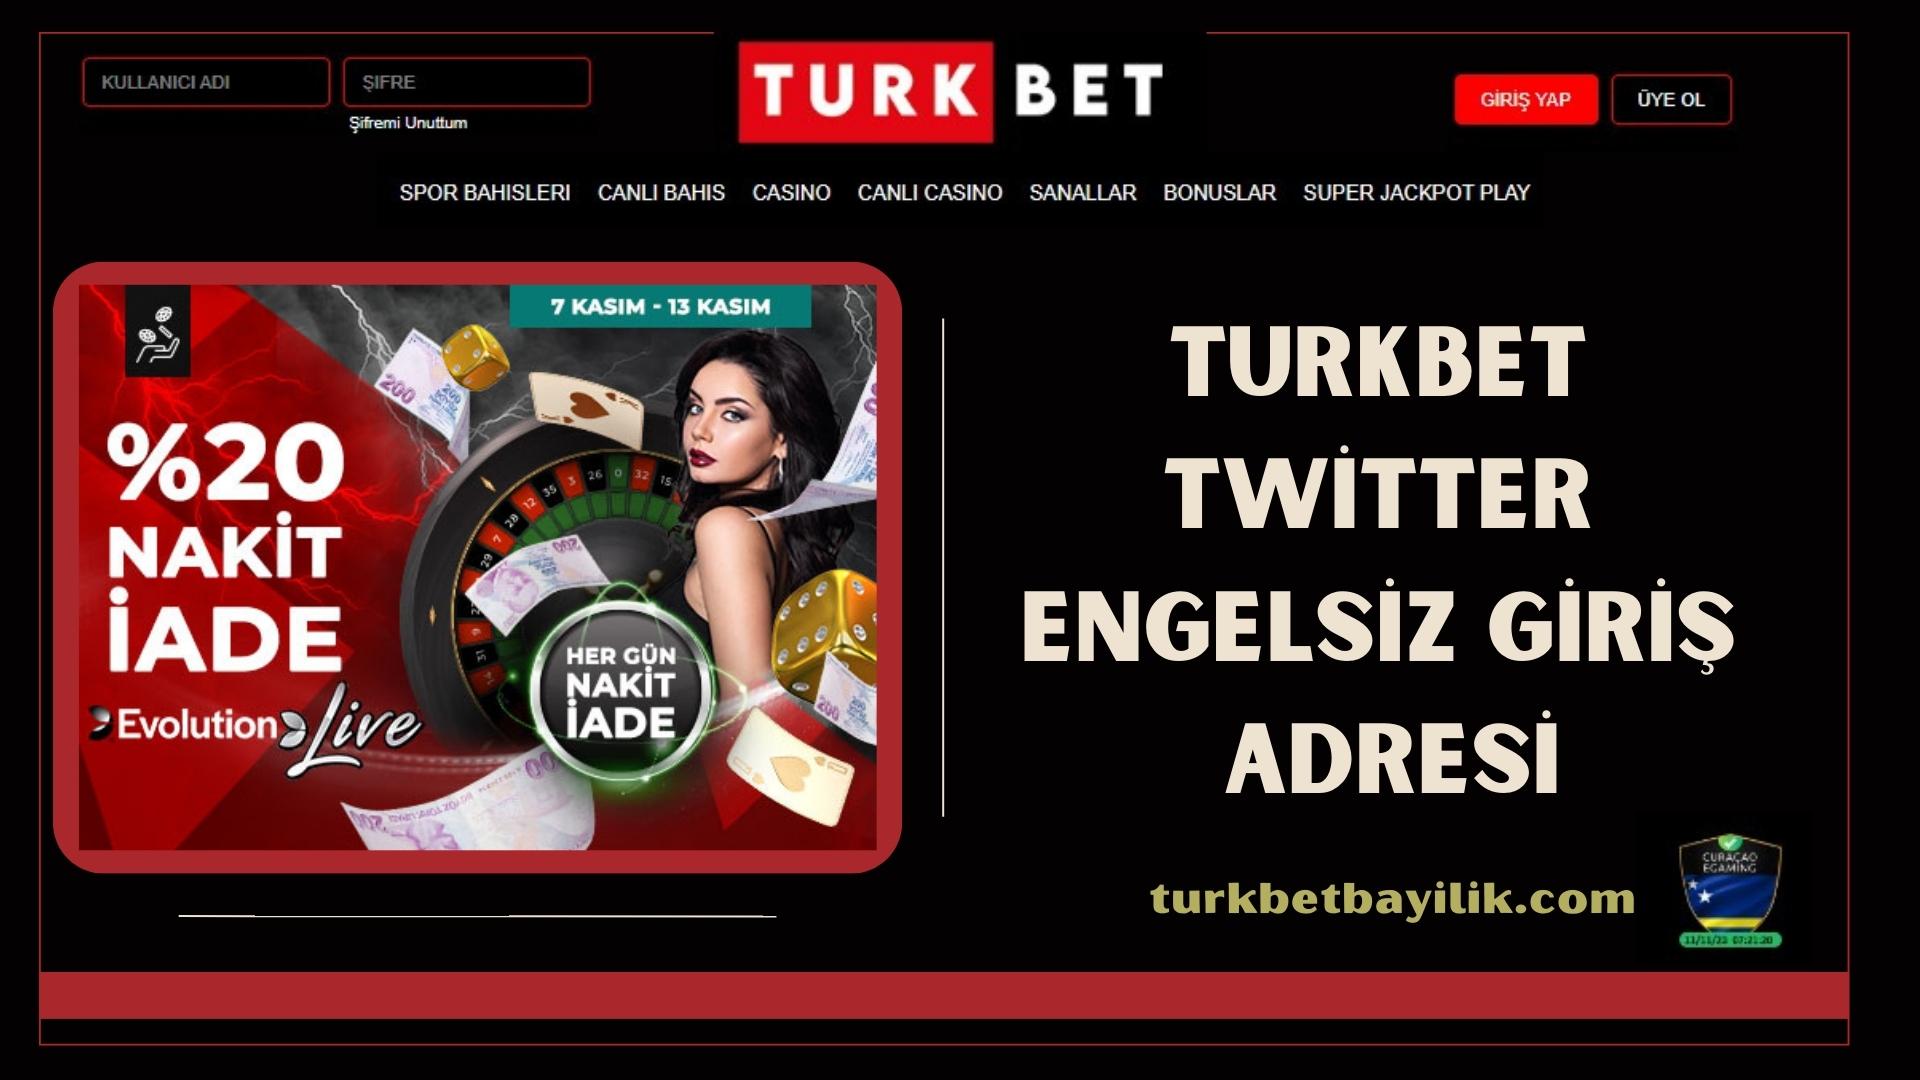 Turkbet Twitter Engelsiz Giriş Adresi